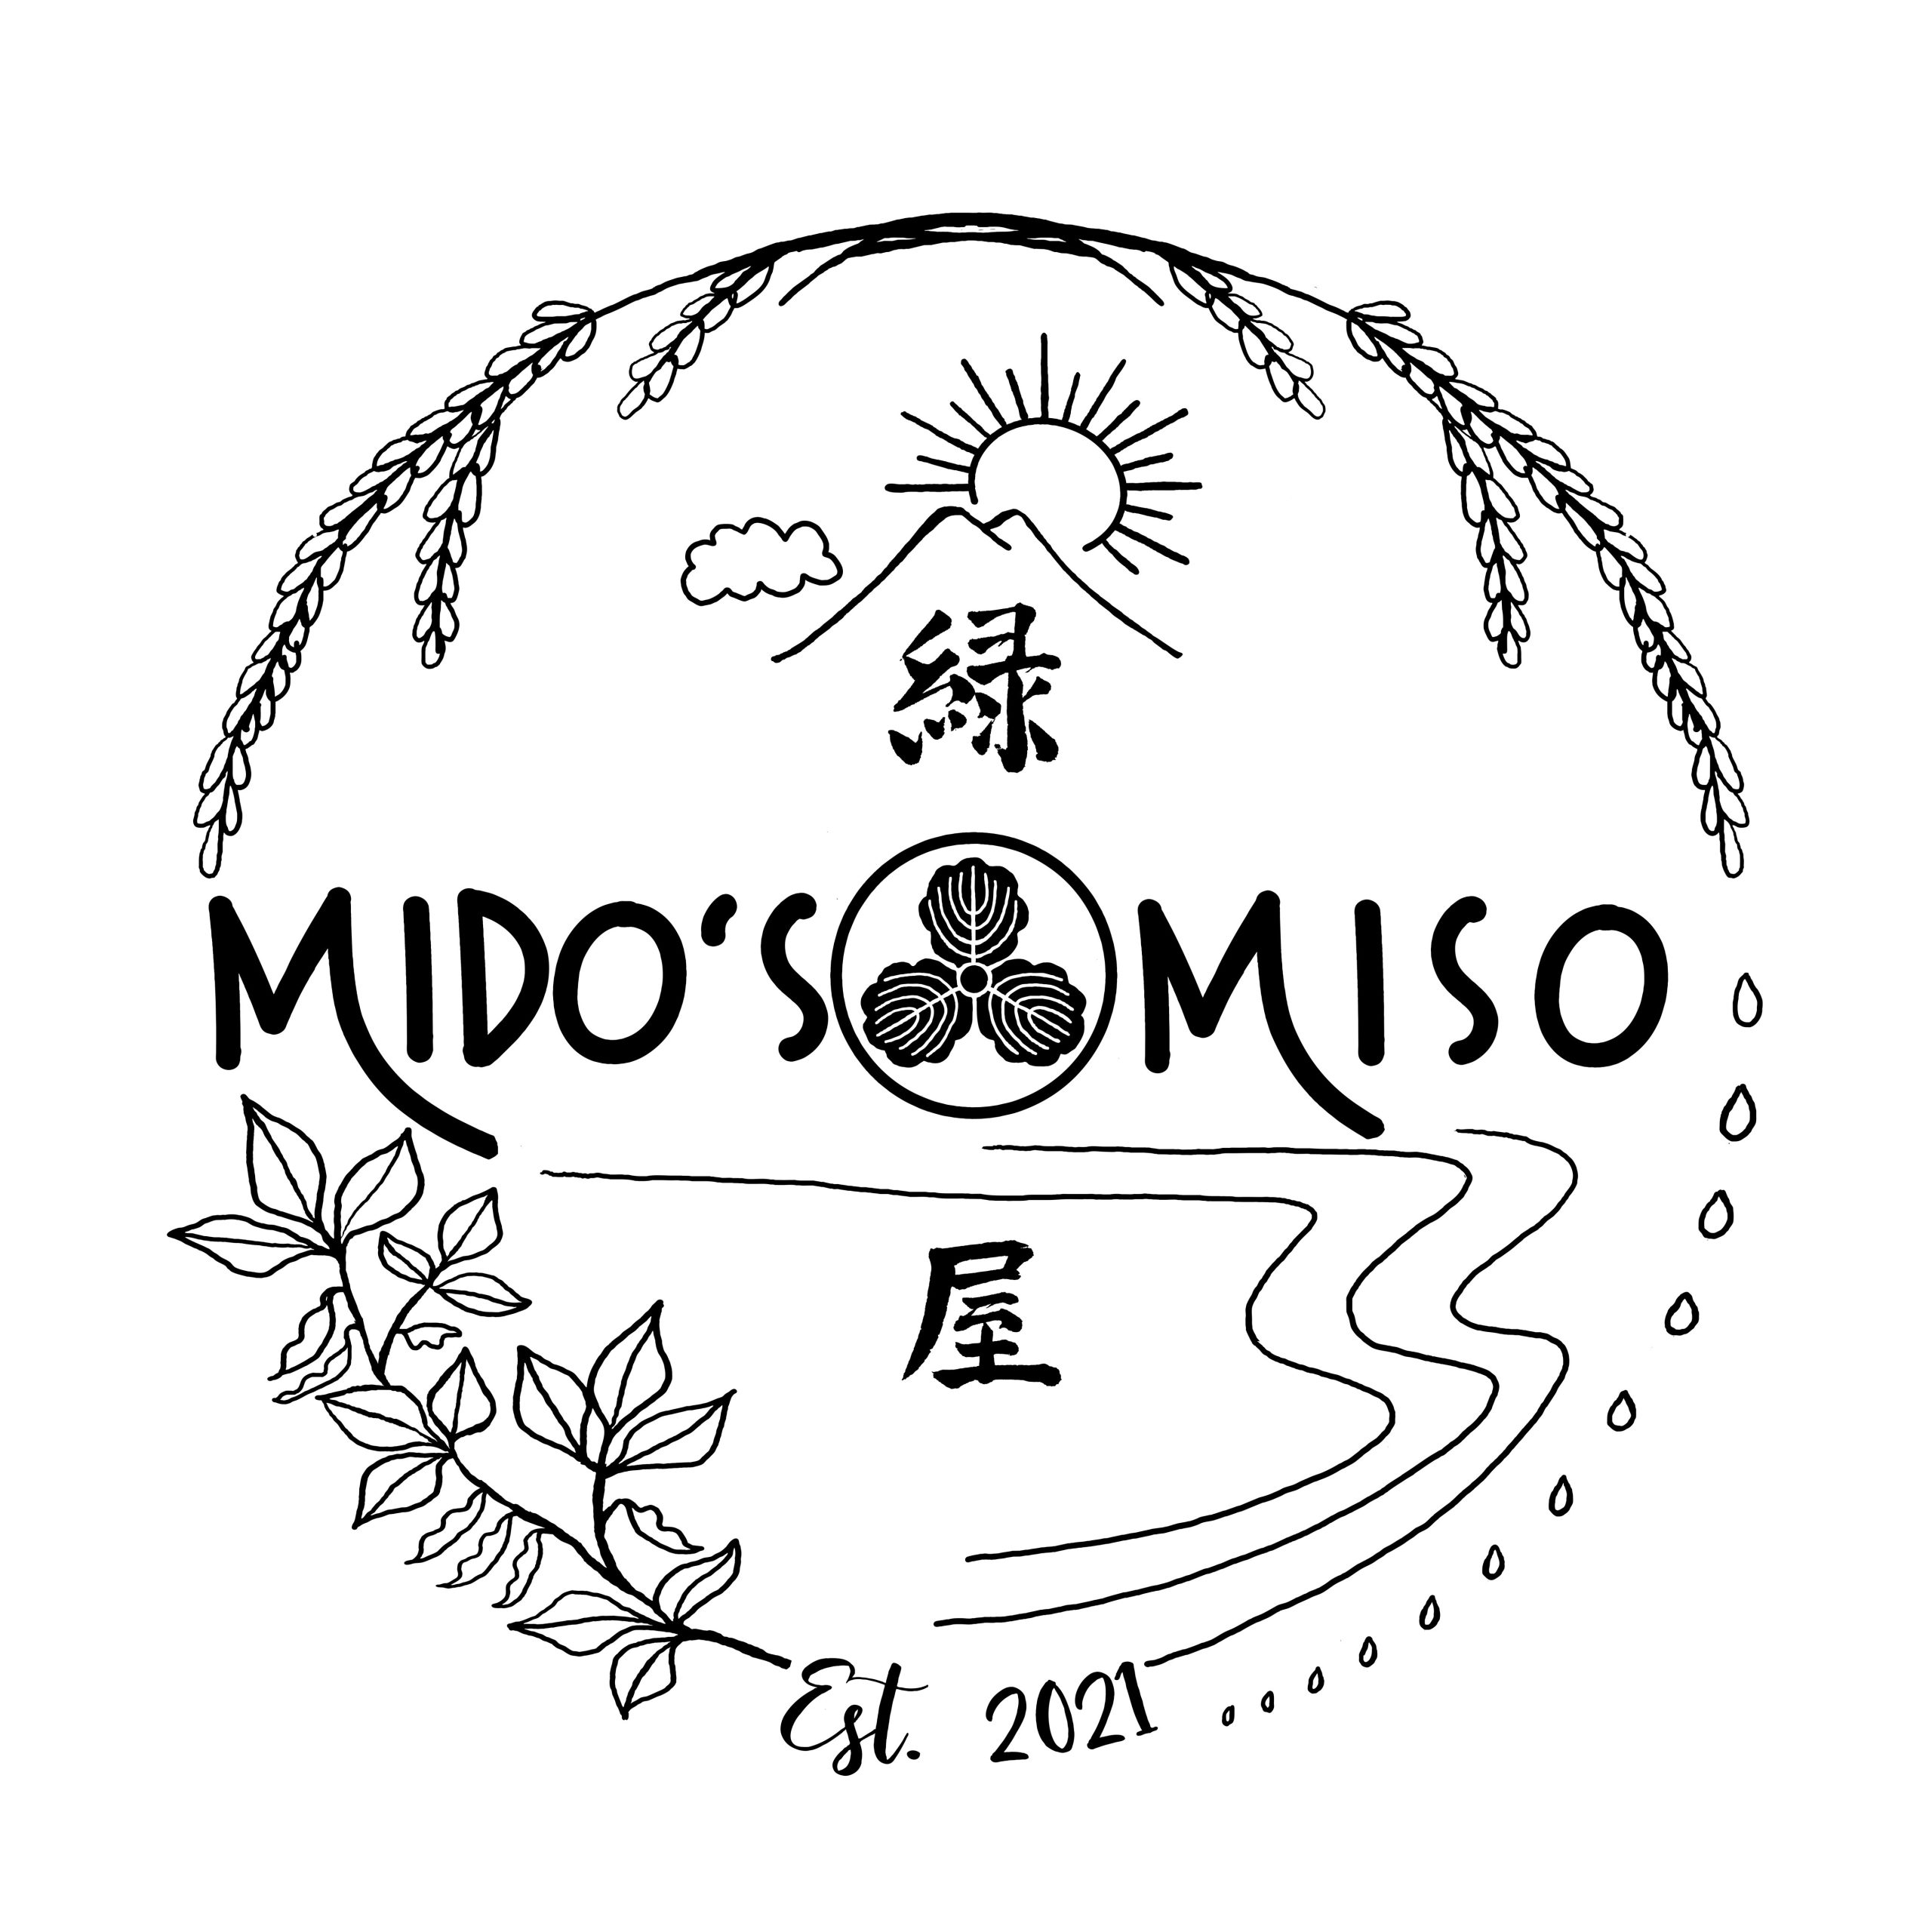 Mido's Miso